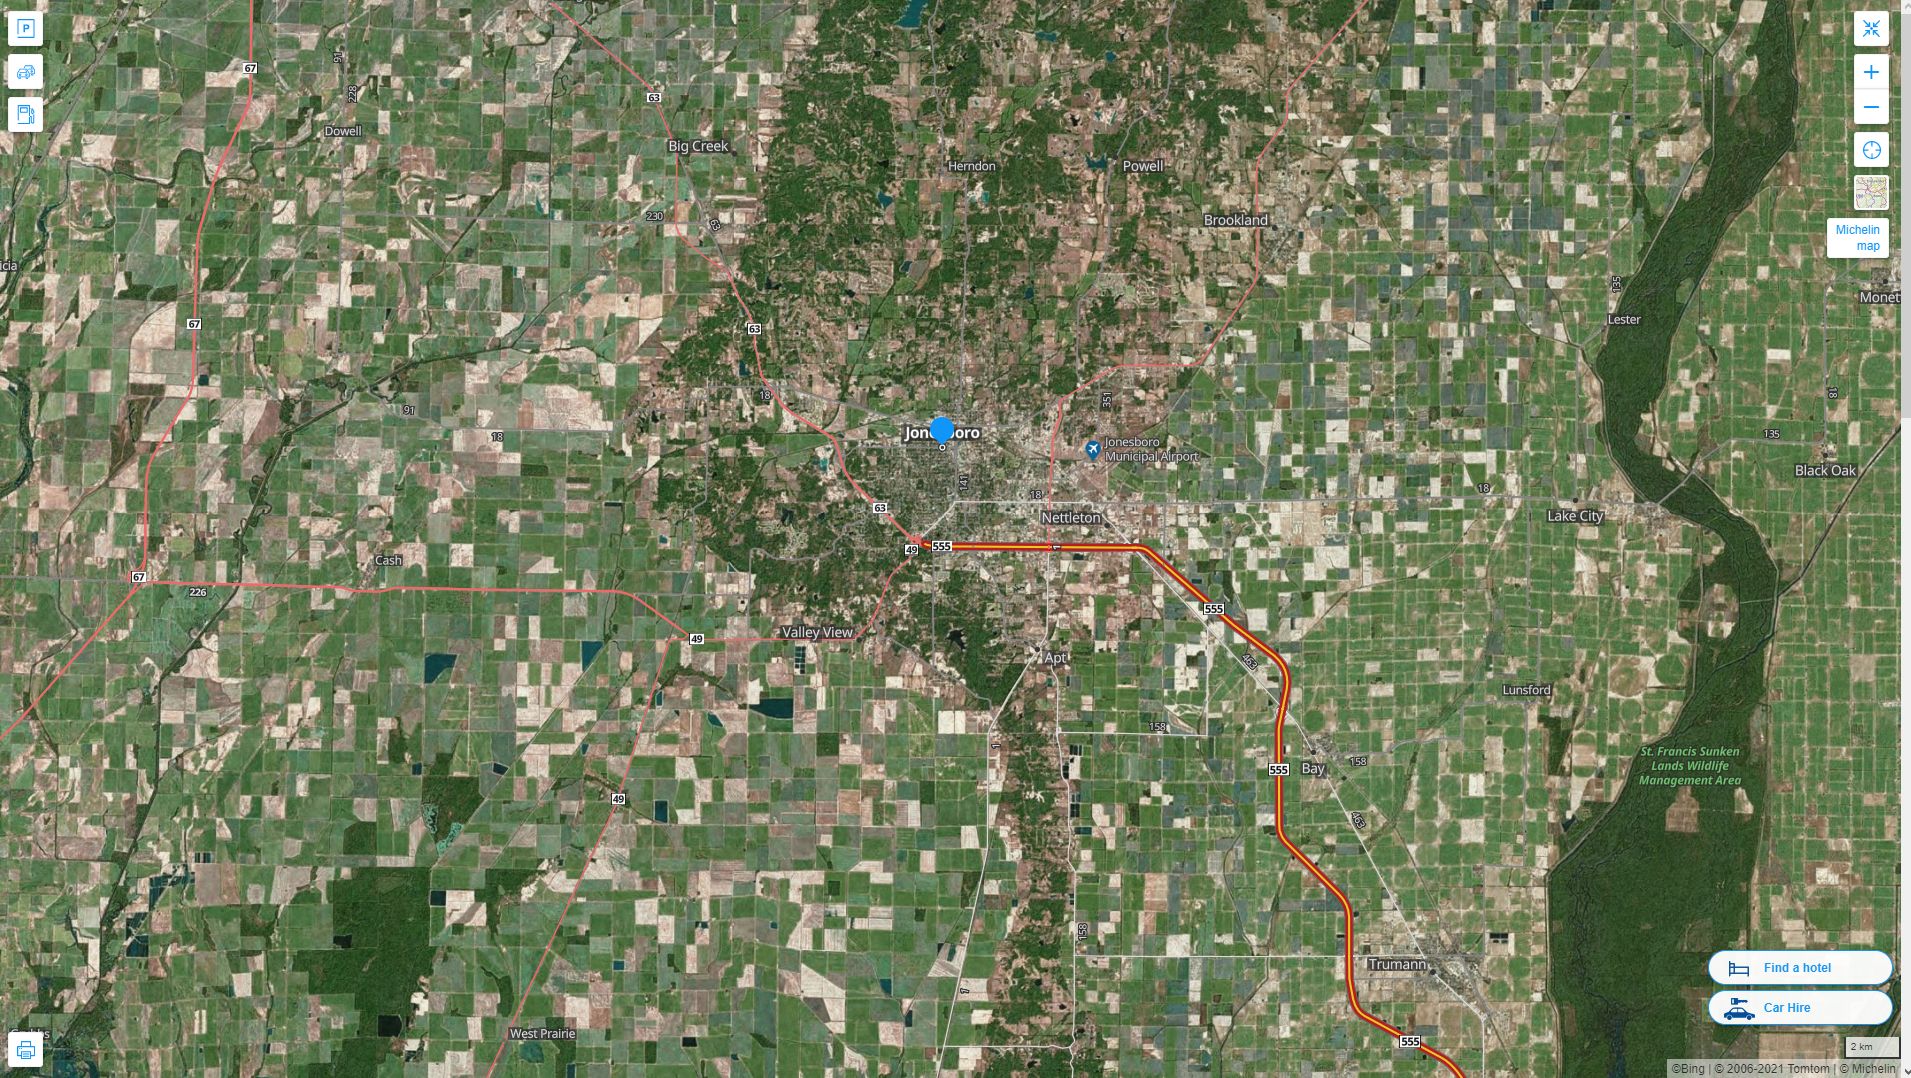 Jonesboro Arkansas Highway and Road Map with Satellite View